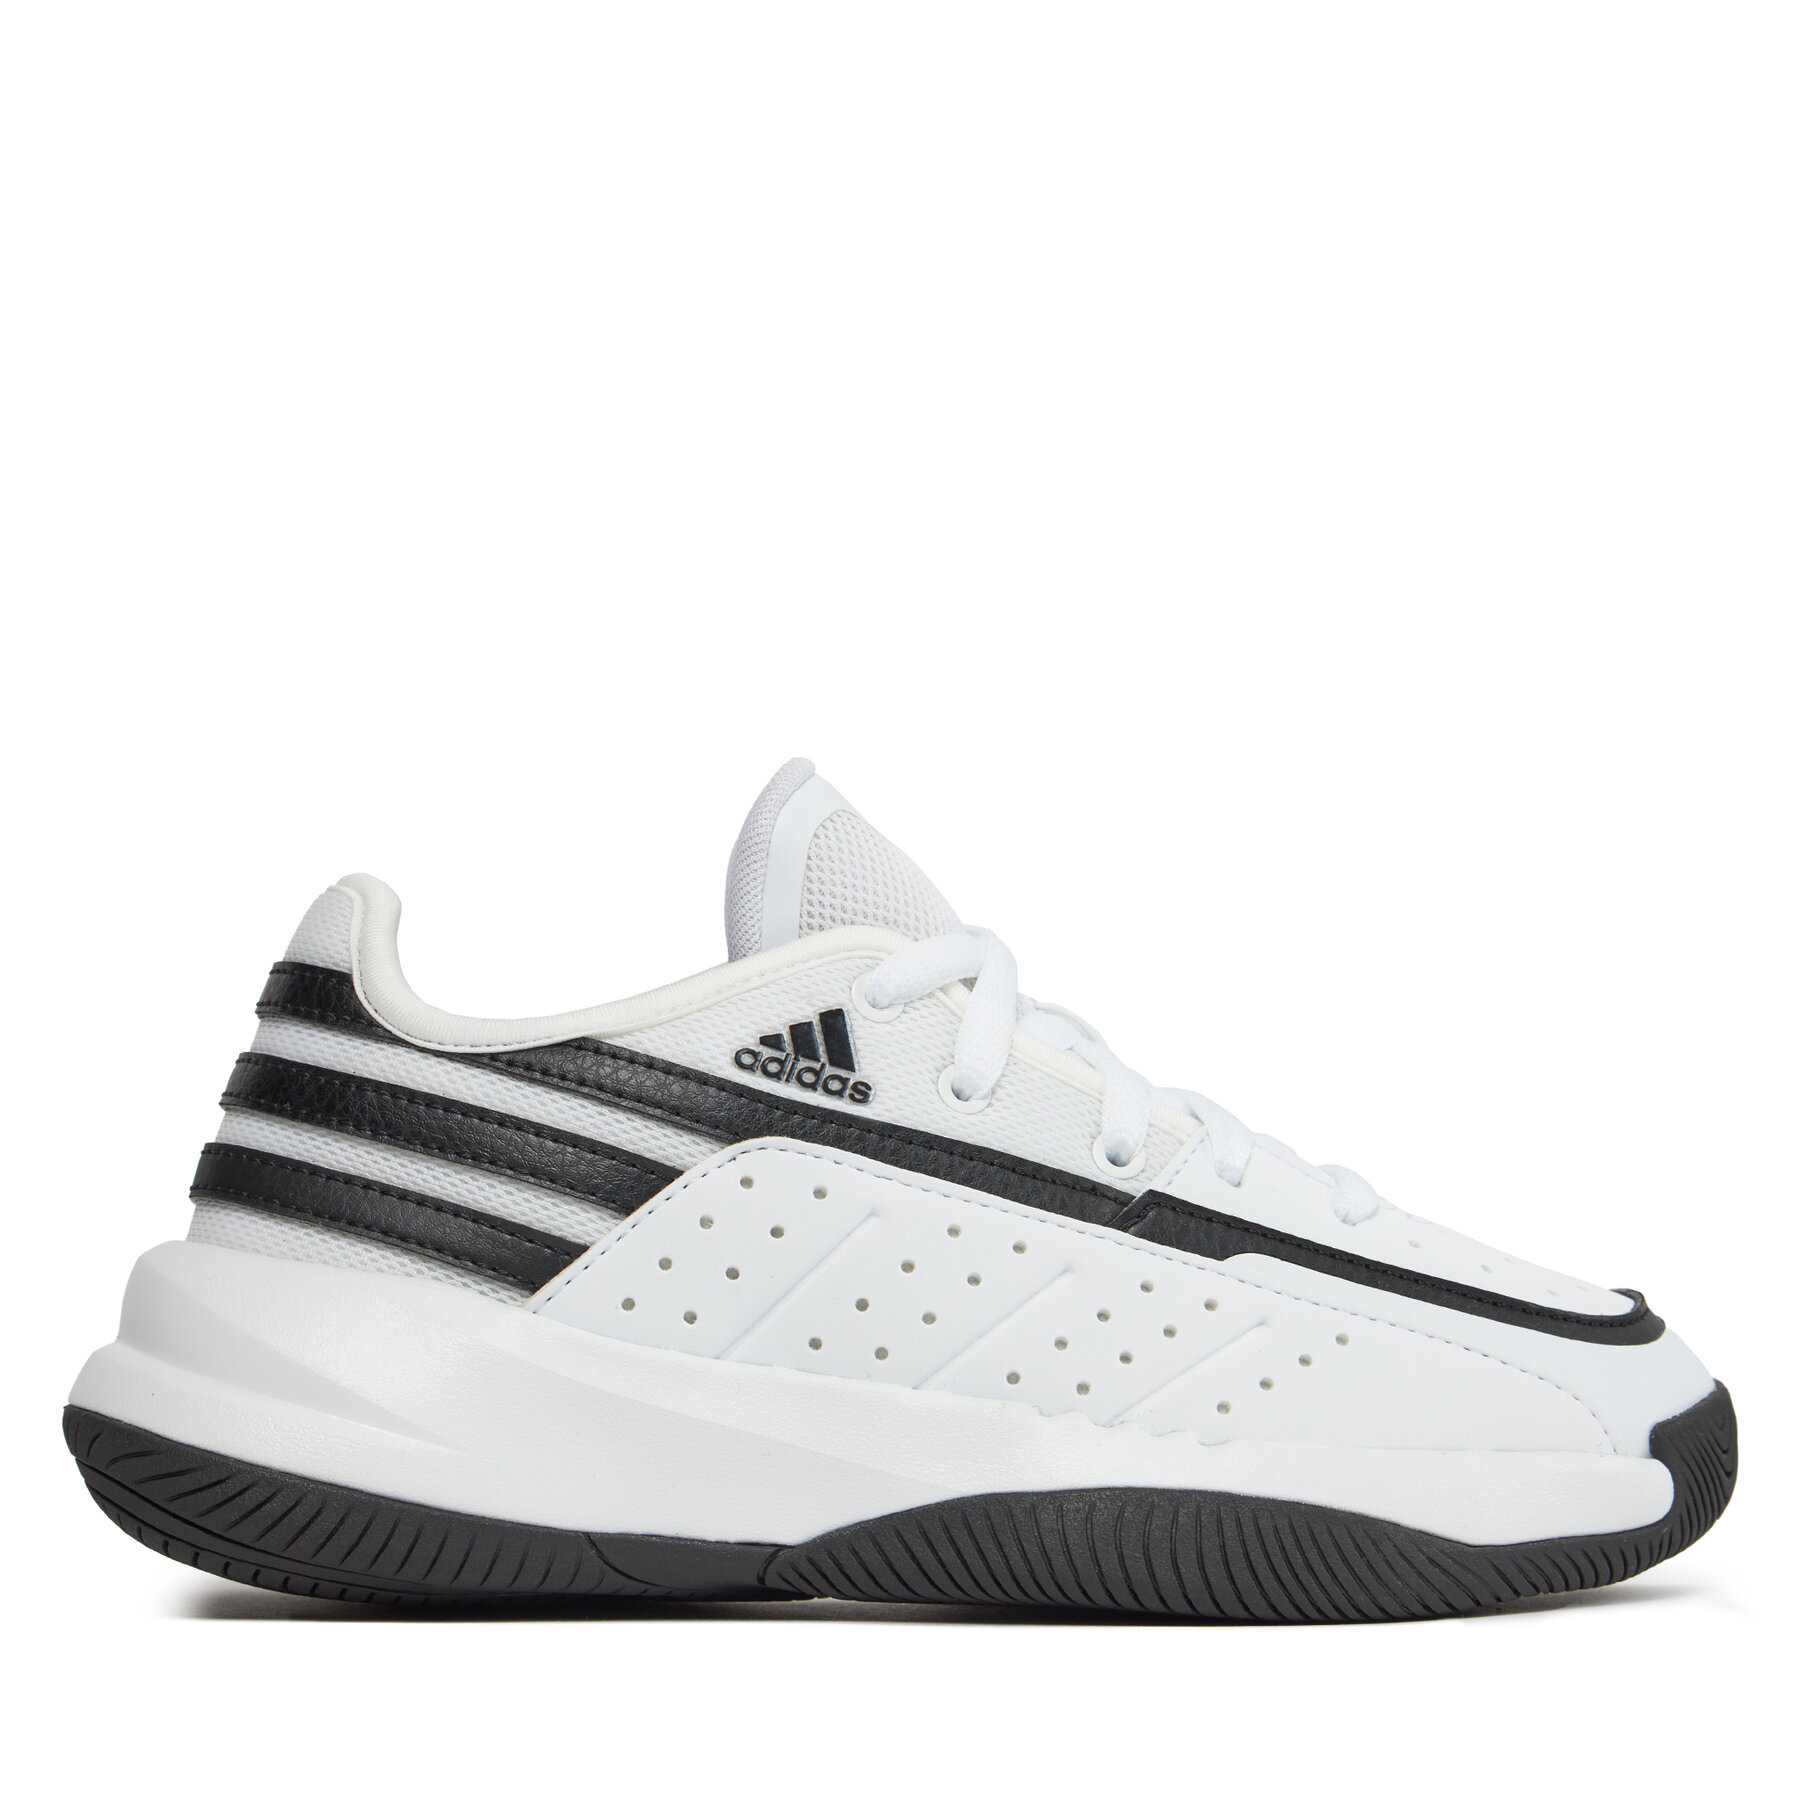 Adidas Basketball shoe black-white 79783822-42 - Zapatillas de baloncesto